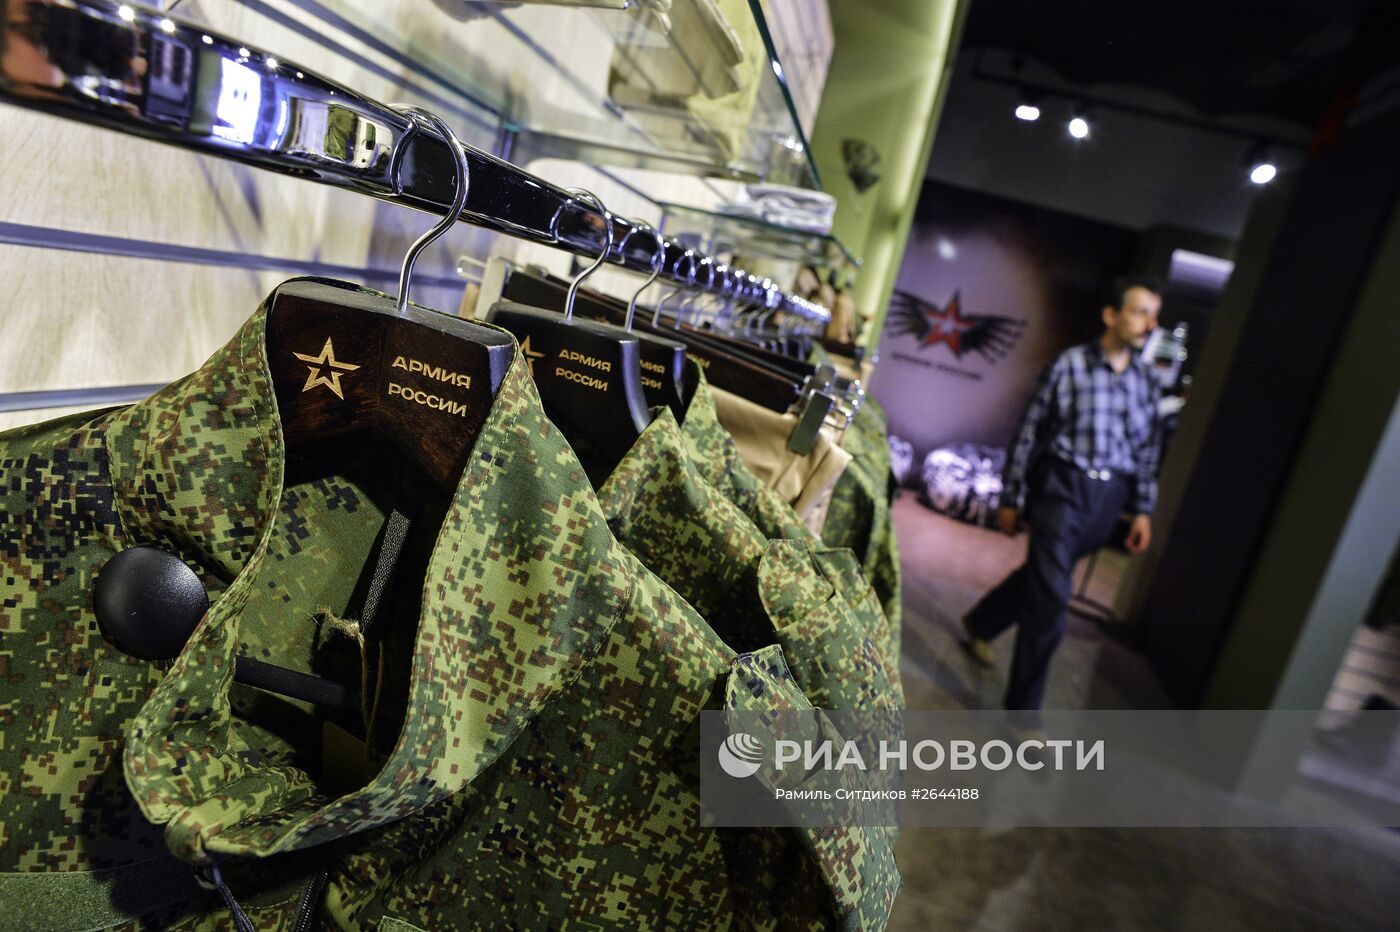 Магазин "Армия России" открылся в Москве